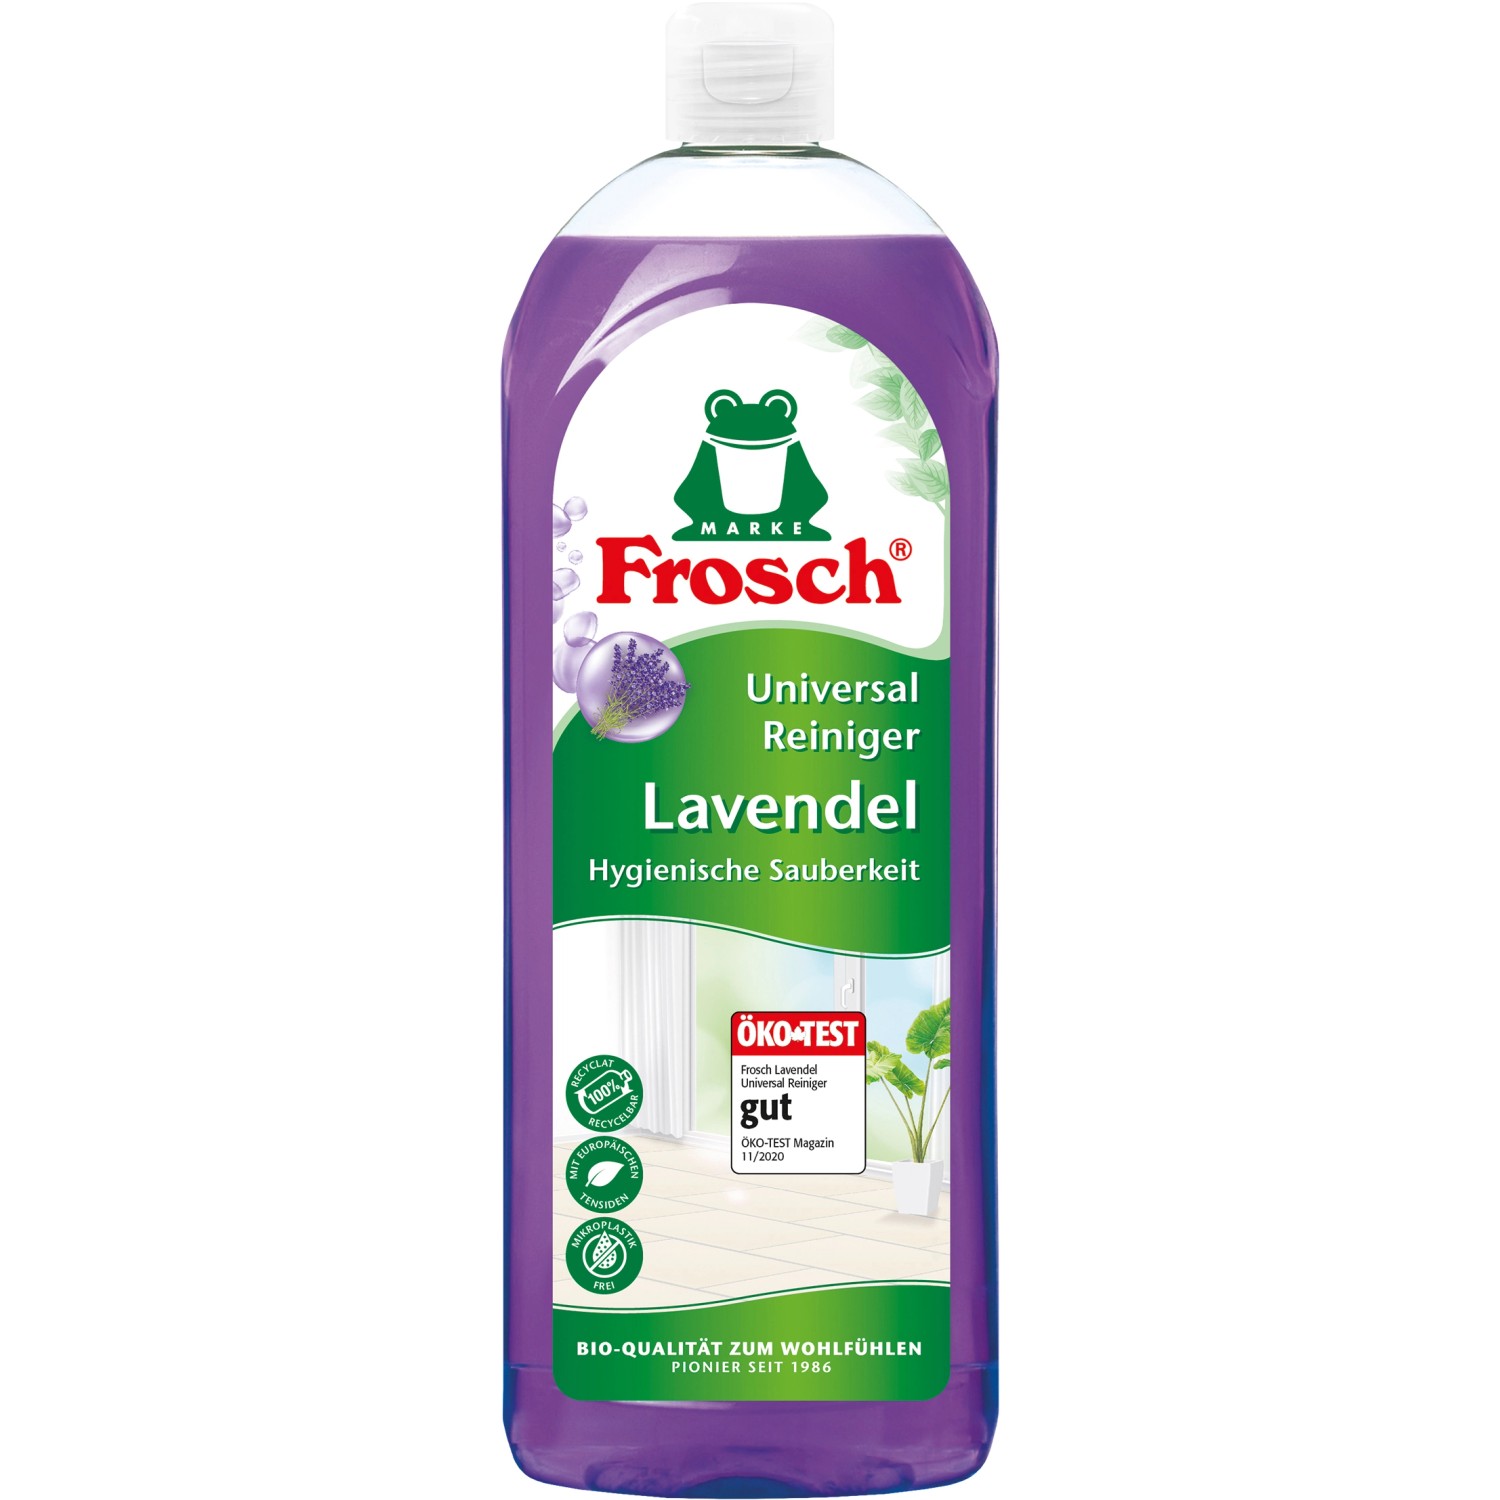 Frosch Lavendel Universal Reiniger 750 ml